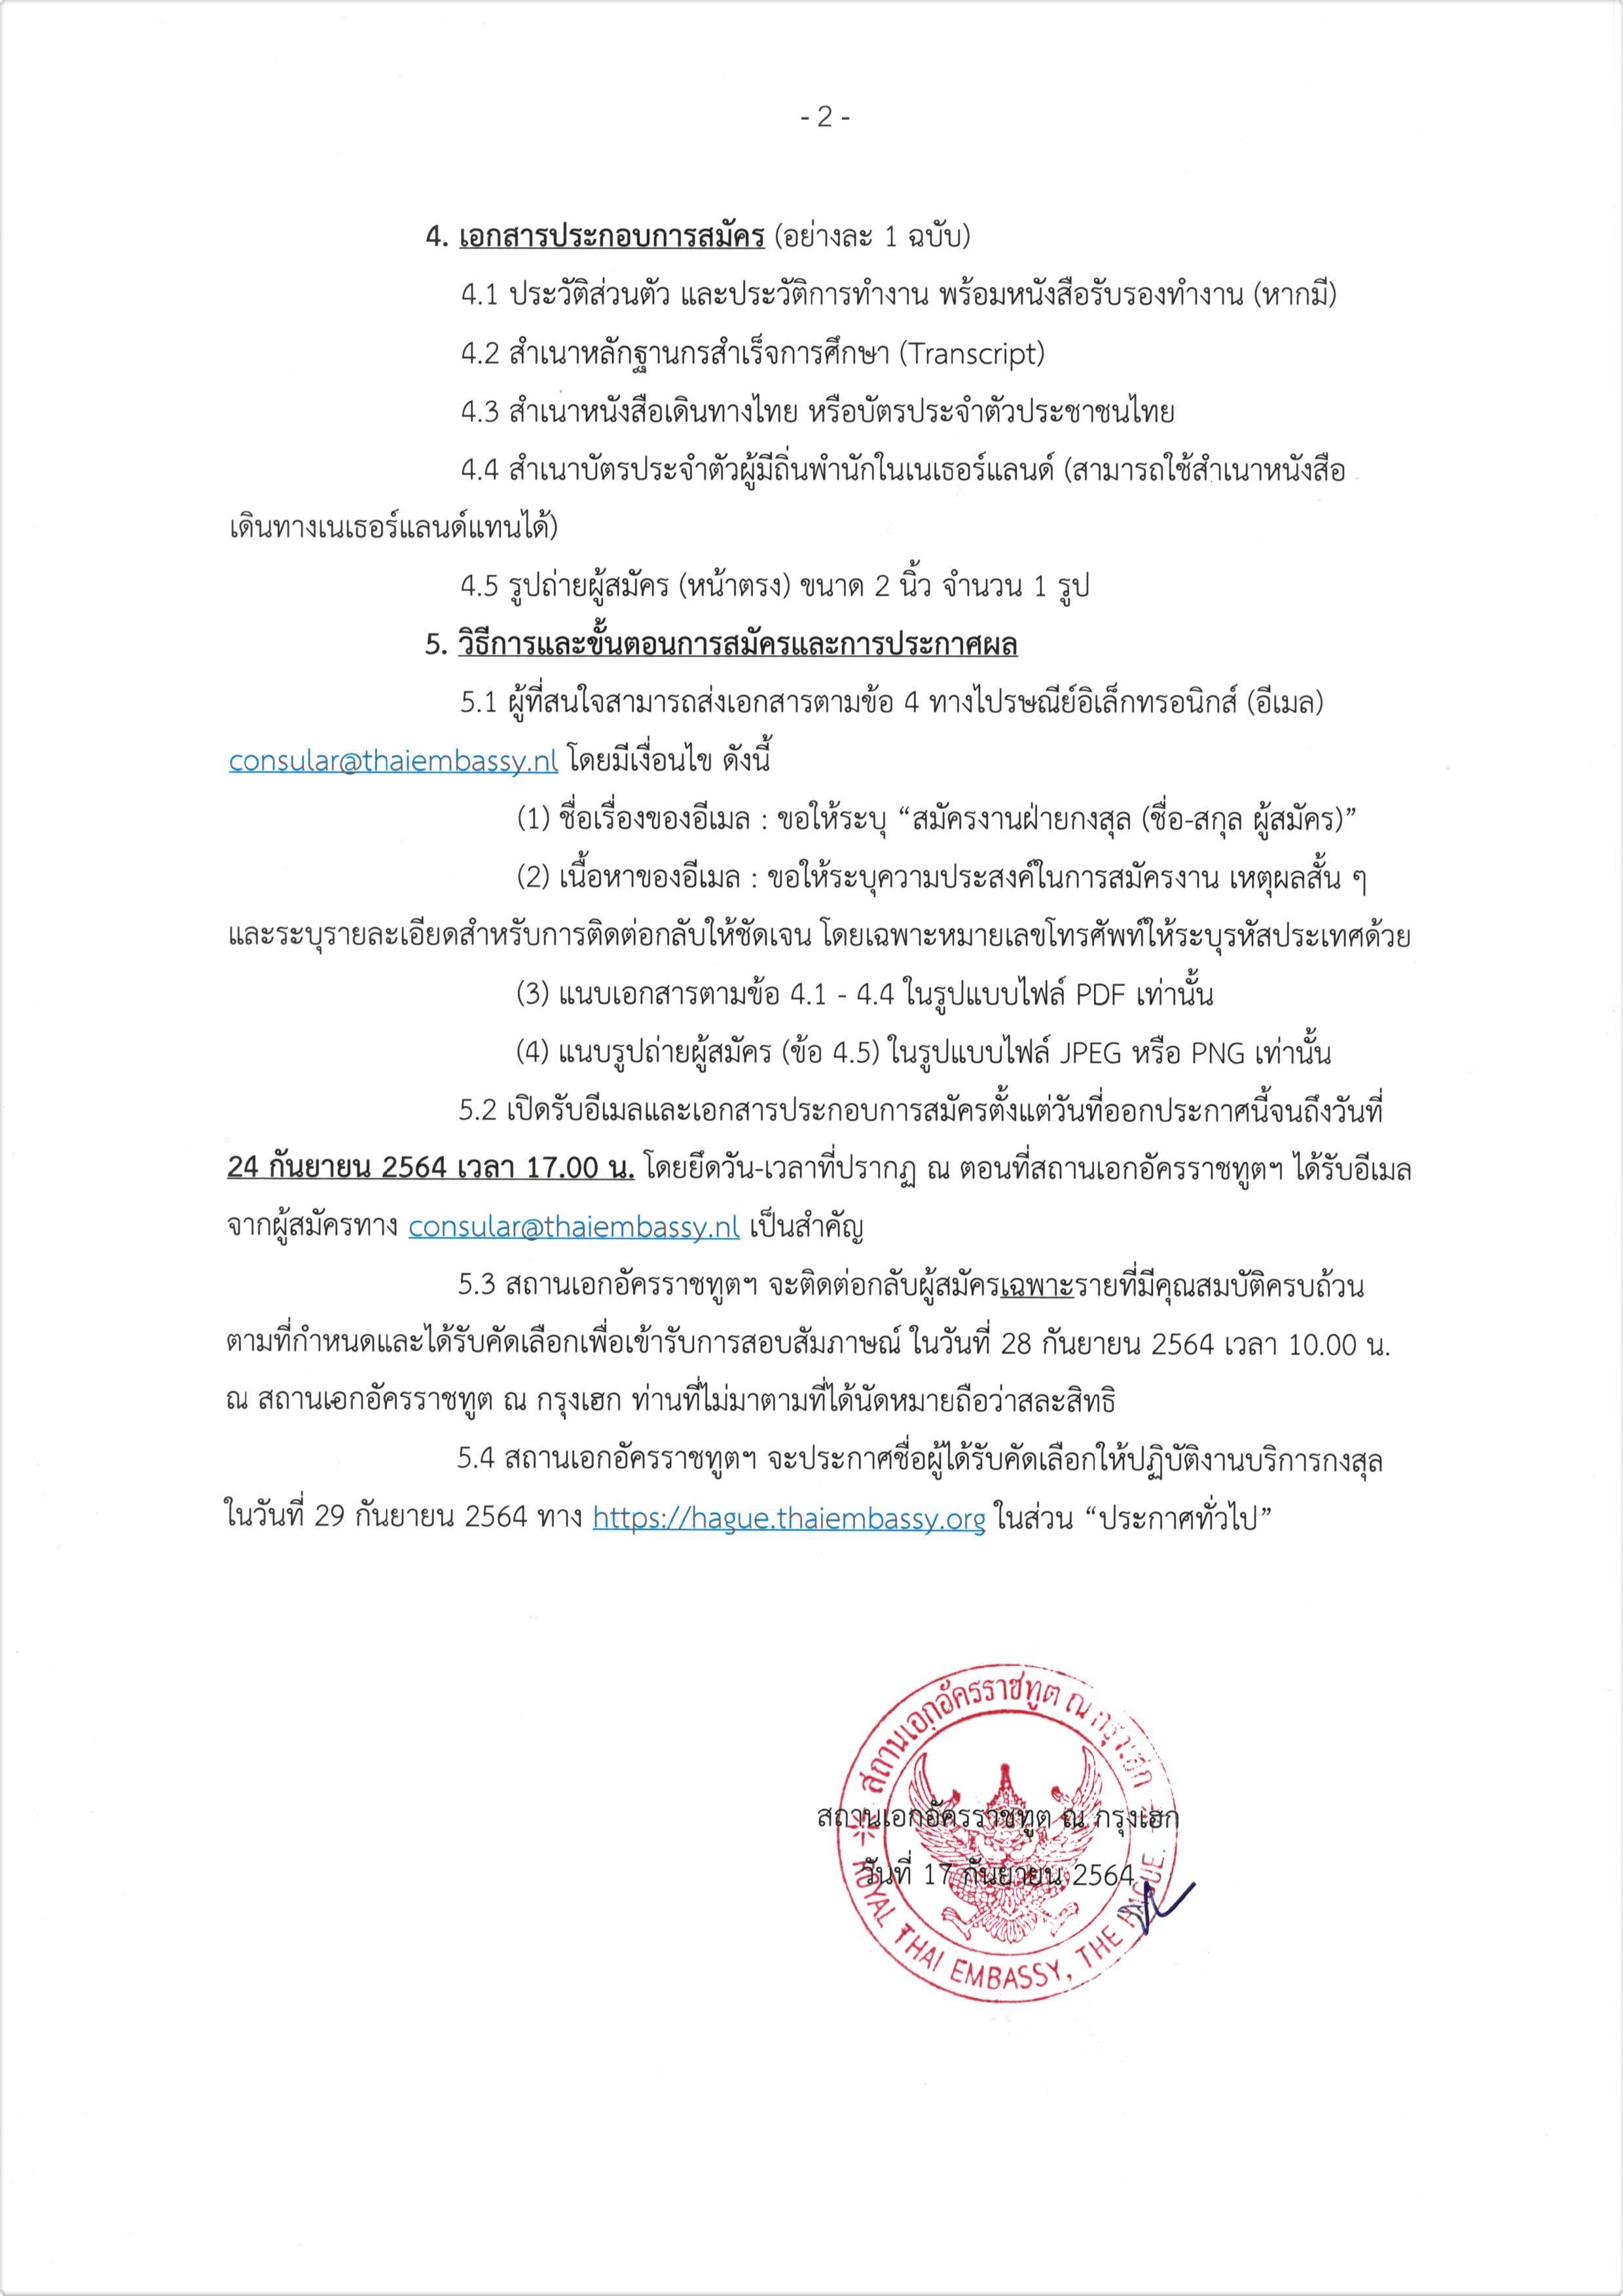 ประกาศรับสมัครบุคคลสัญชาติไทยเพื่อปฏิบัติงานบริการกงสุลแบบไม่เต็มเวลา  (พาร์ทไทม์) - สถานเอกอัครราชทูต ณ กรุงเฮก